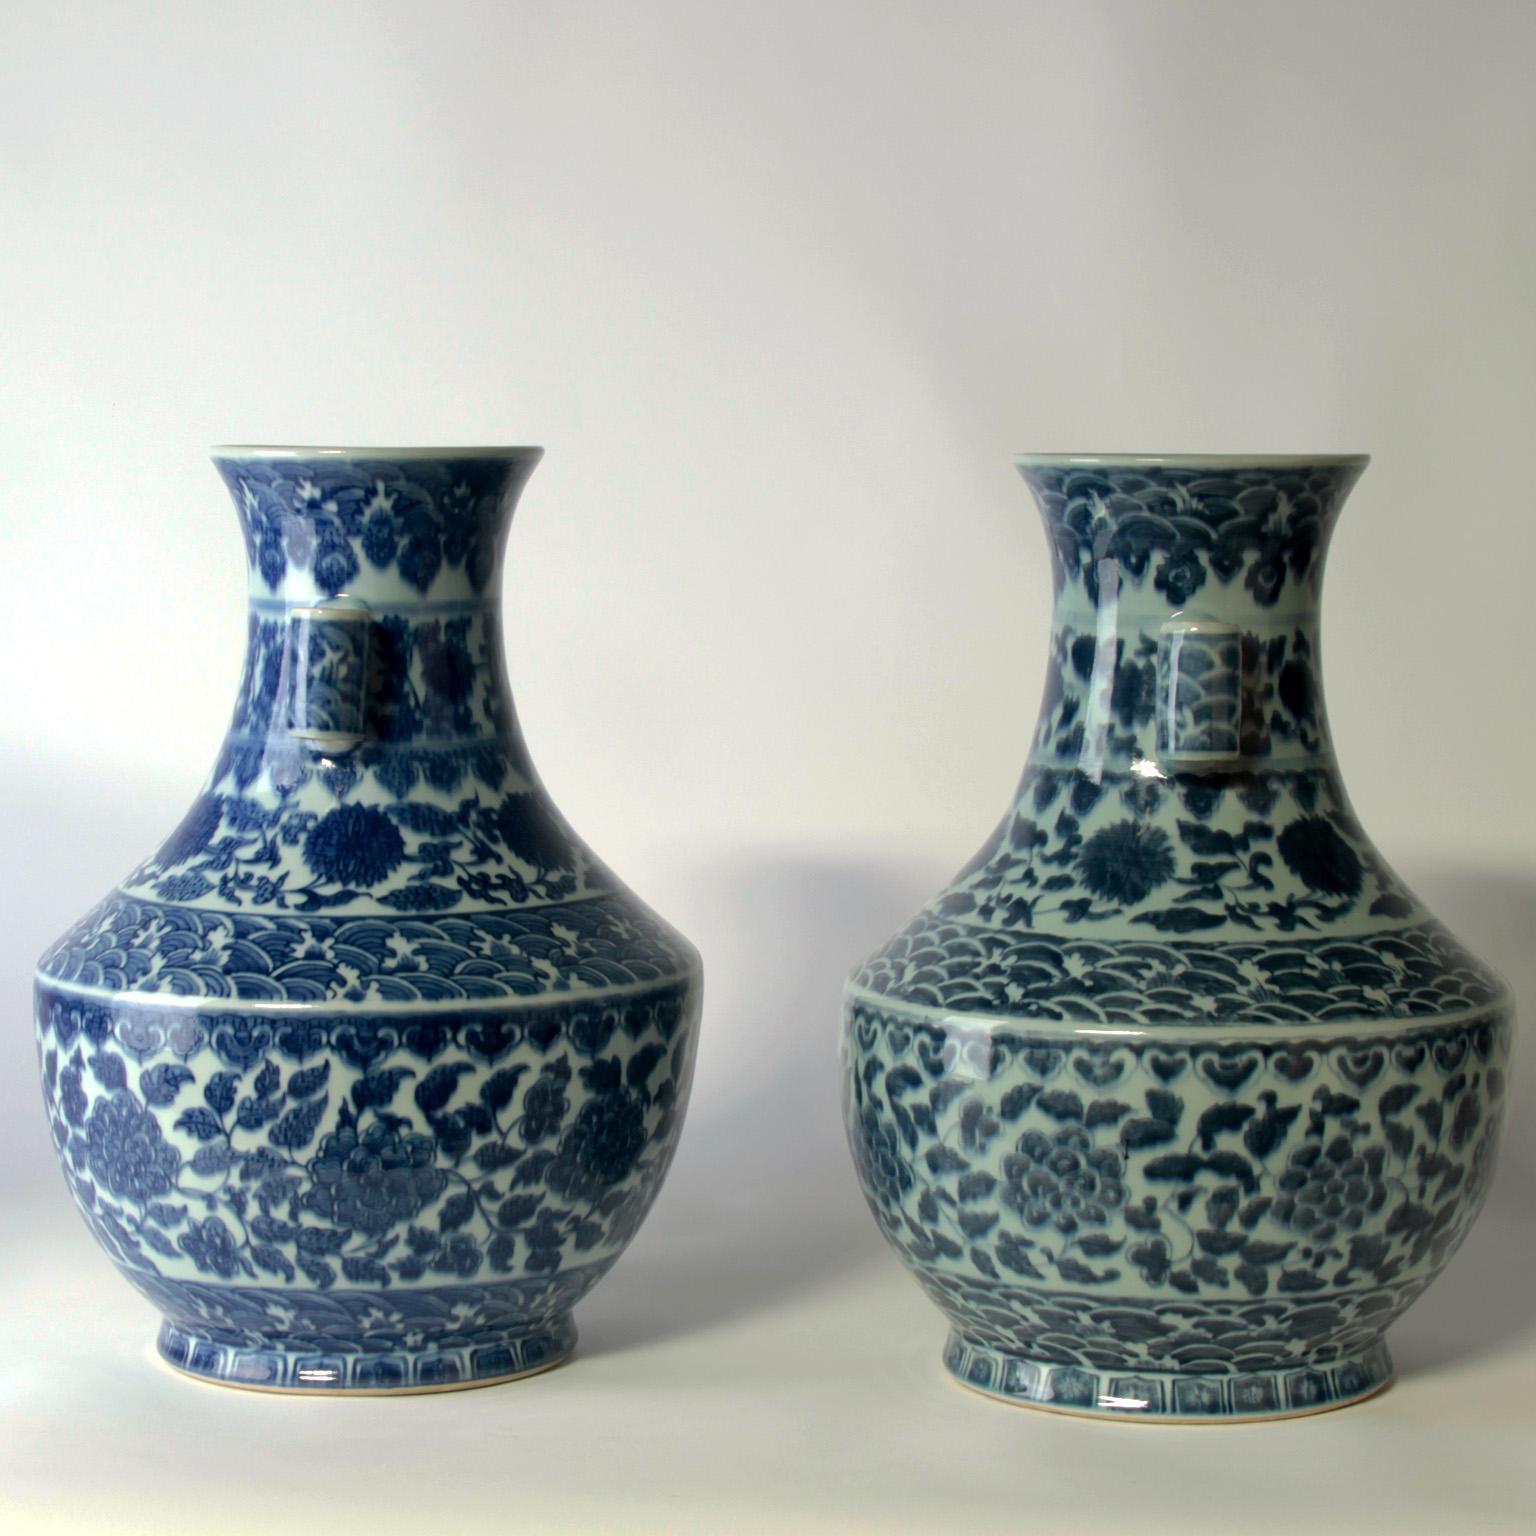 Magnifiques vases du 19ème siècle.